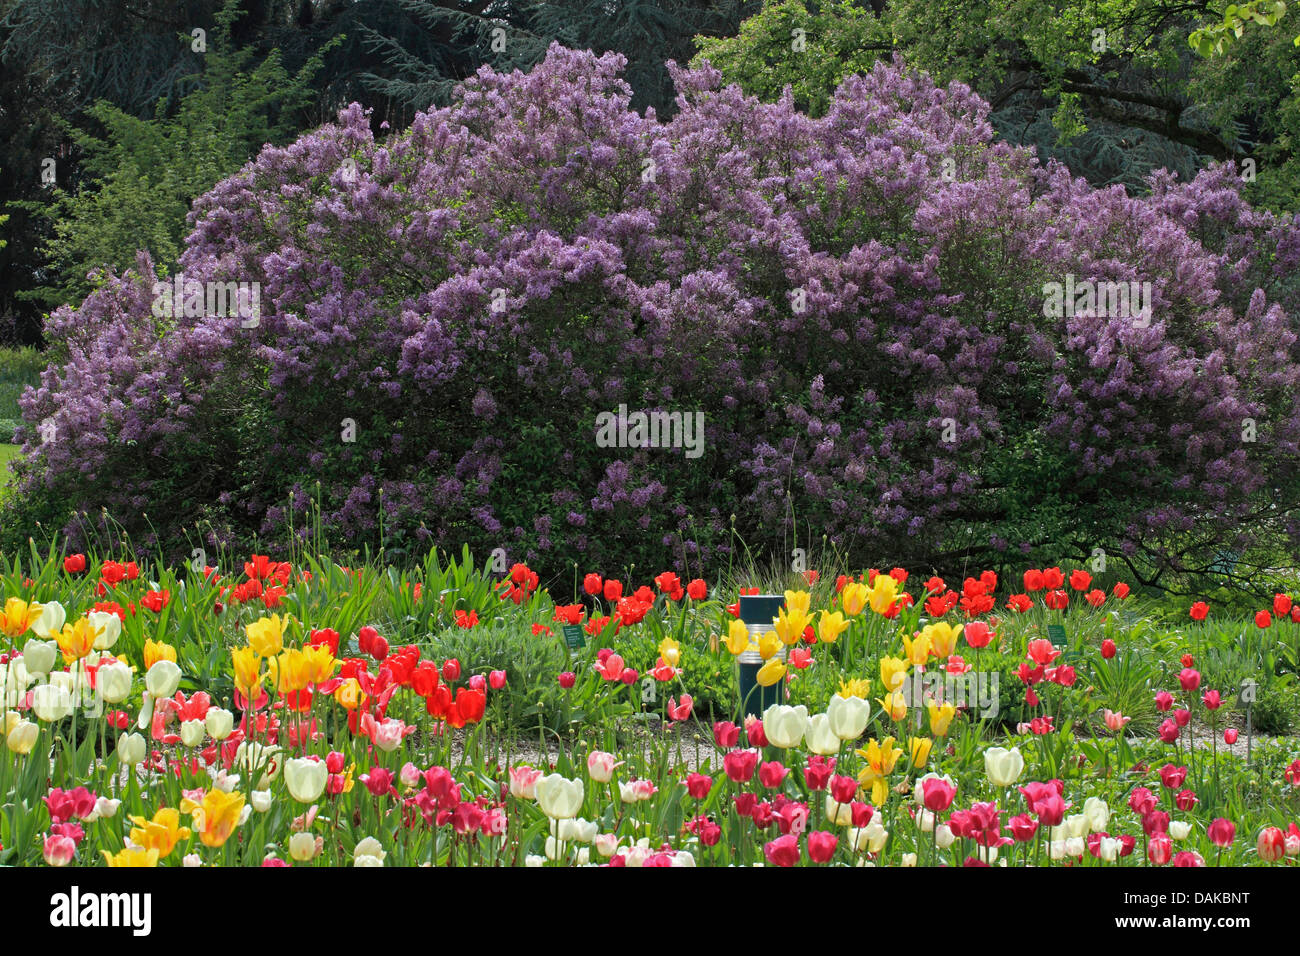 Le lilas commun (Syringa vulgaris), tulip bed de fleurs de lilas, Allemagne Banque D'Images